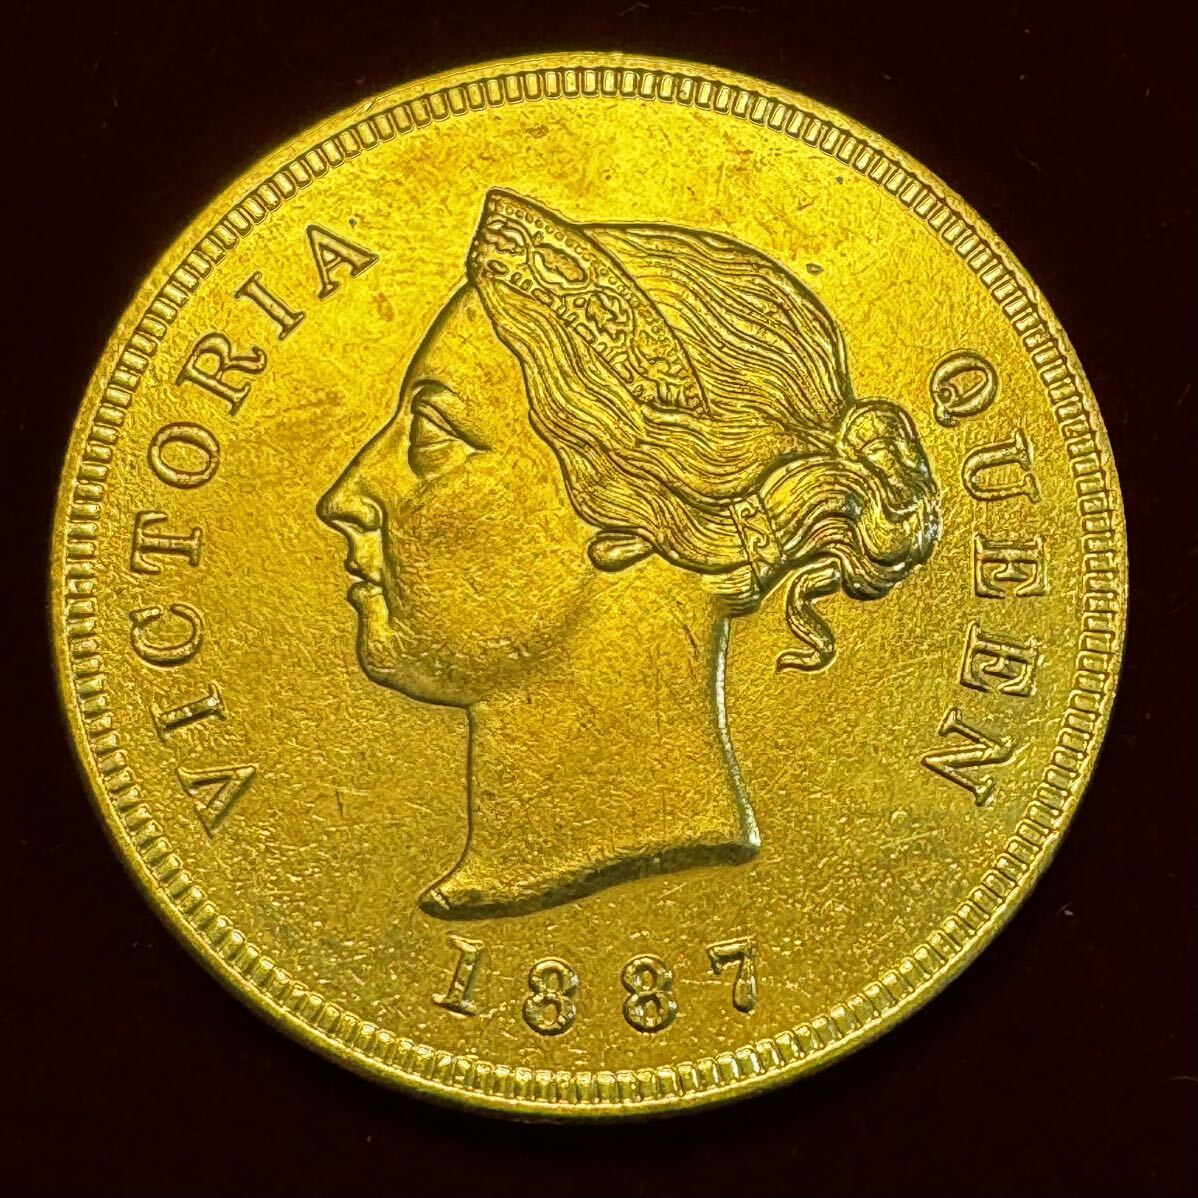 キプロス ヴィクトリア女王 硬貨 古銭 1887年 イギリス海外領土 1/2ピアストル コイン 金貨 外国古銭 海外硬貨の画像1